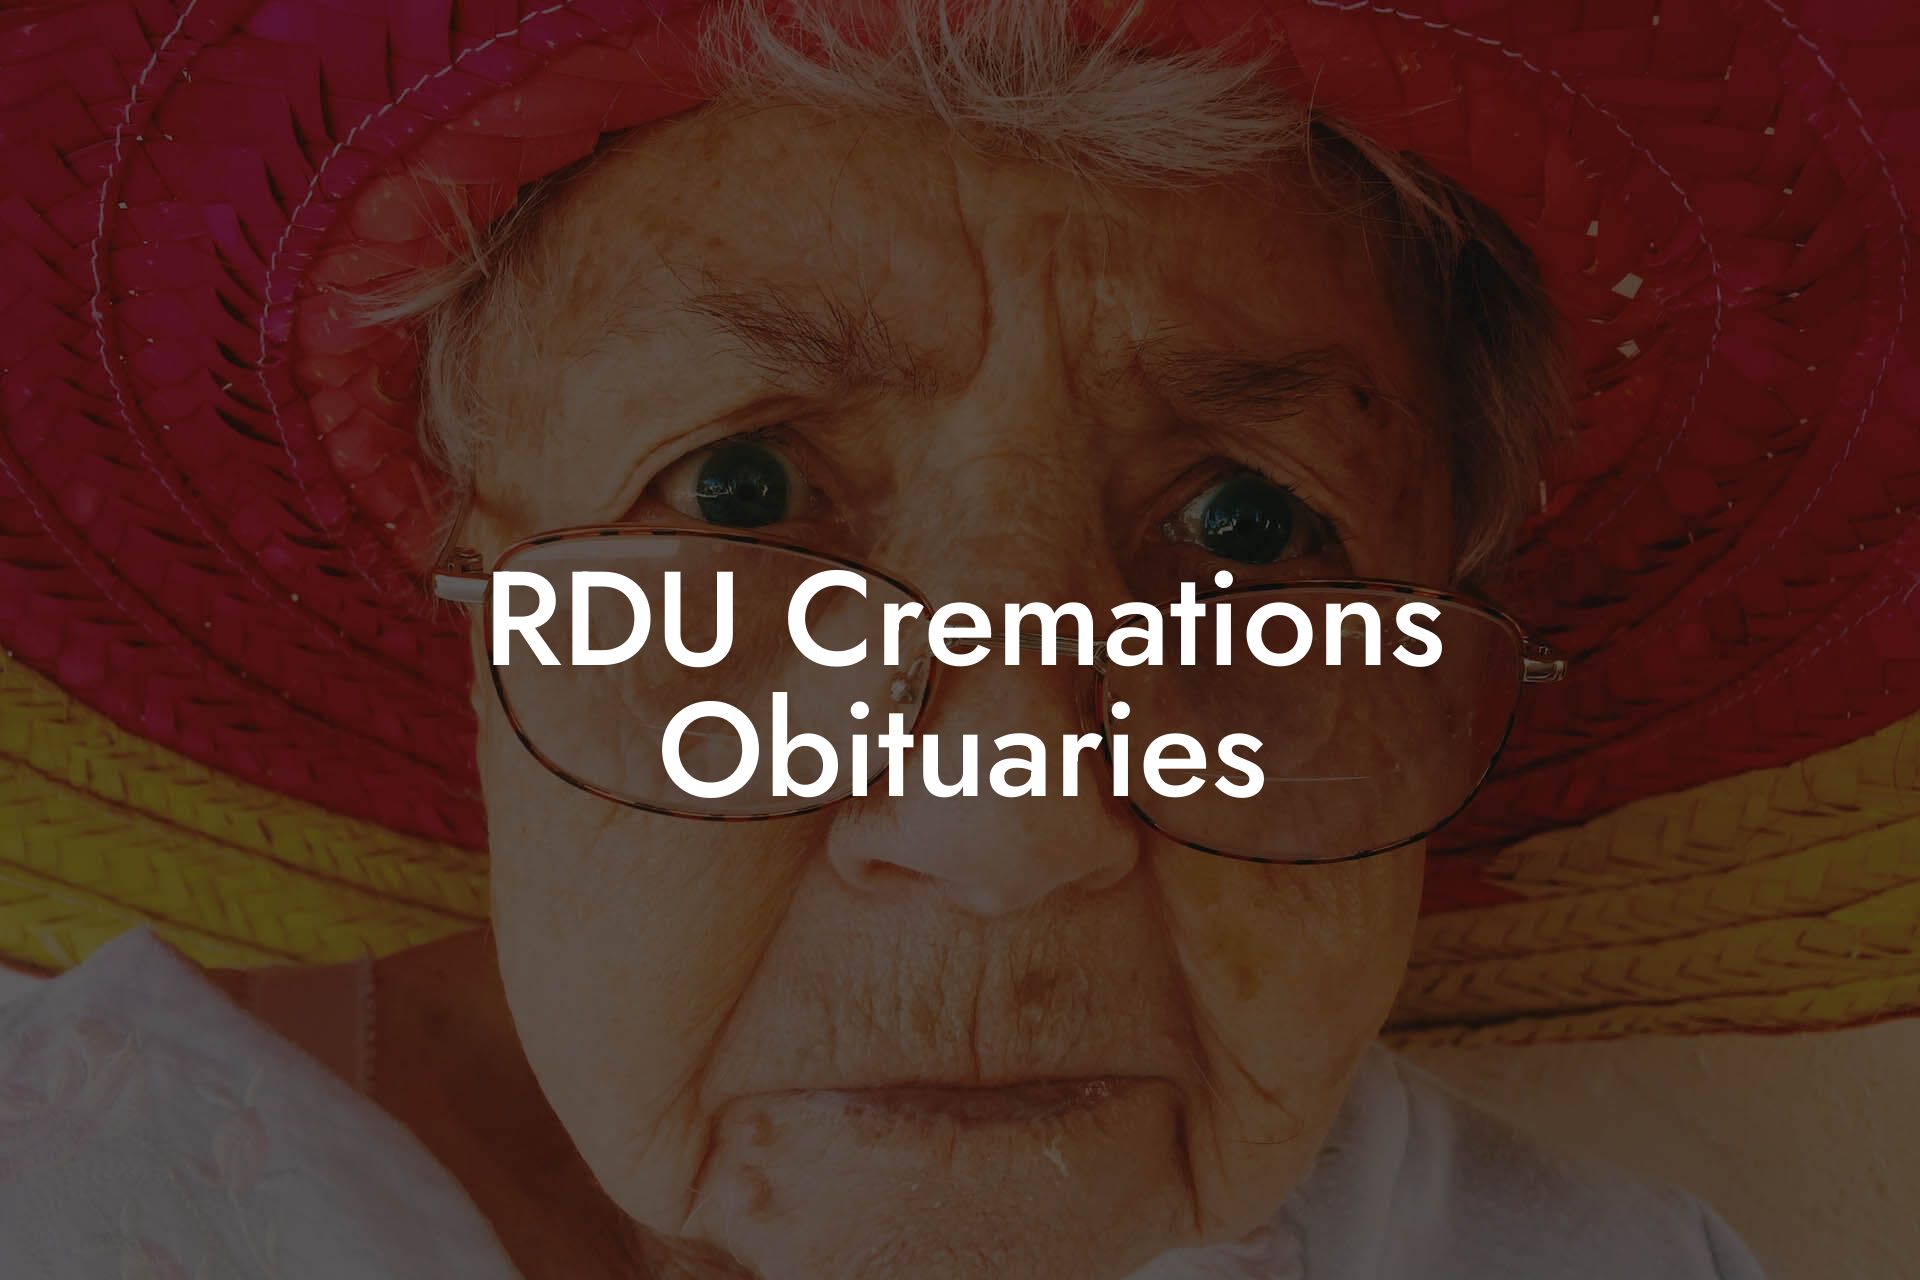 RDU Cremations Obituaries